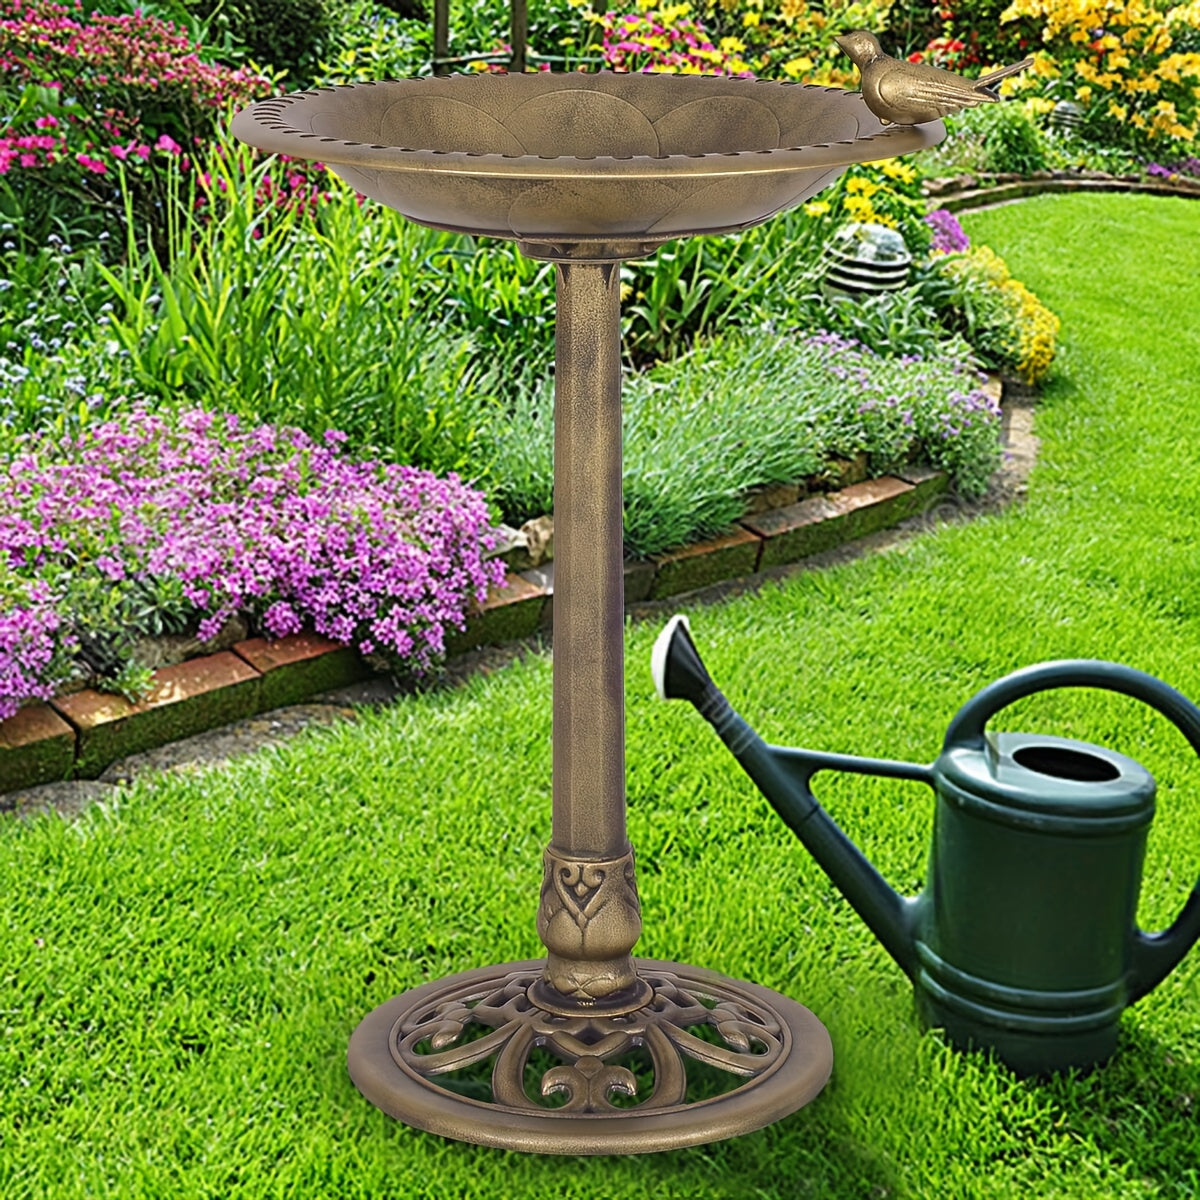 Antique Golden Freestanding Pedestal, Raised Bird Feeder Outdoor Garden Yard Decor